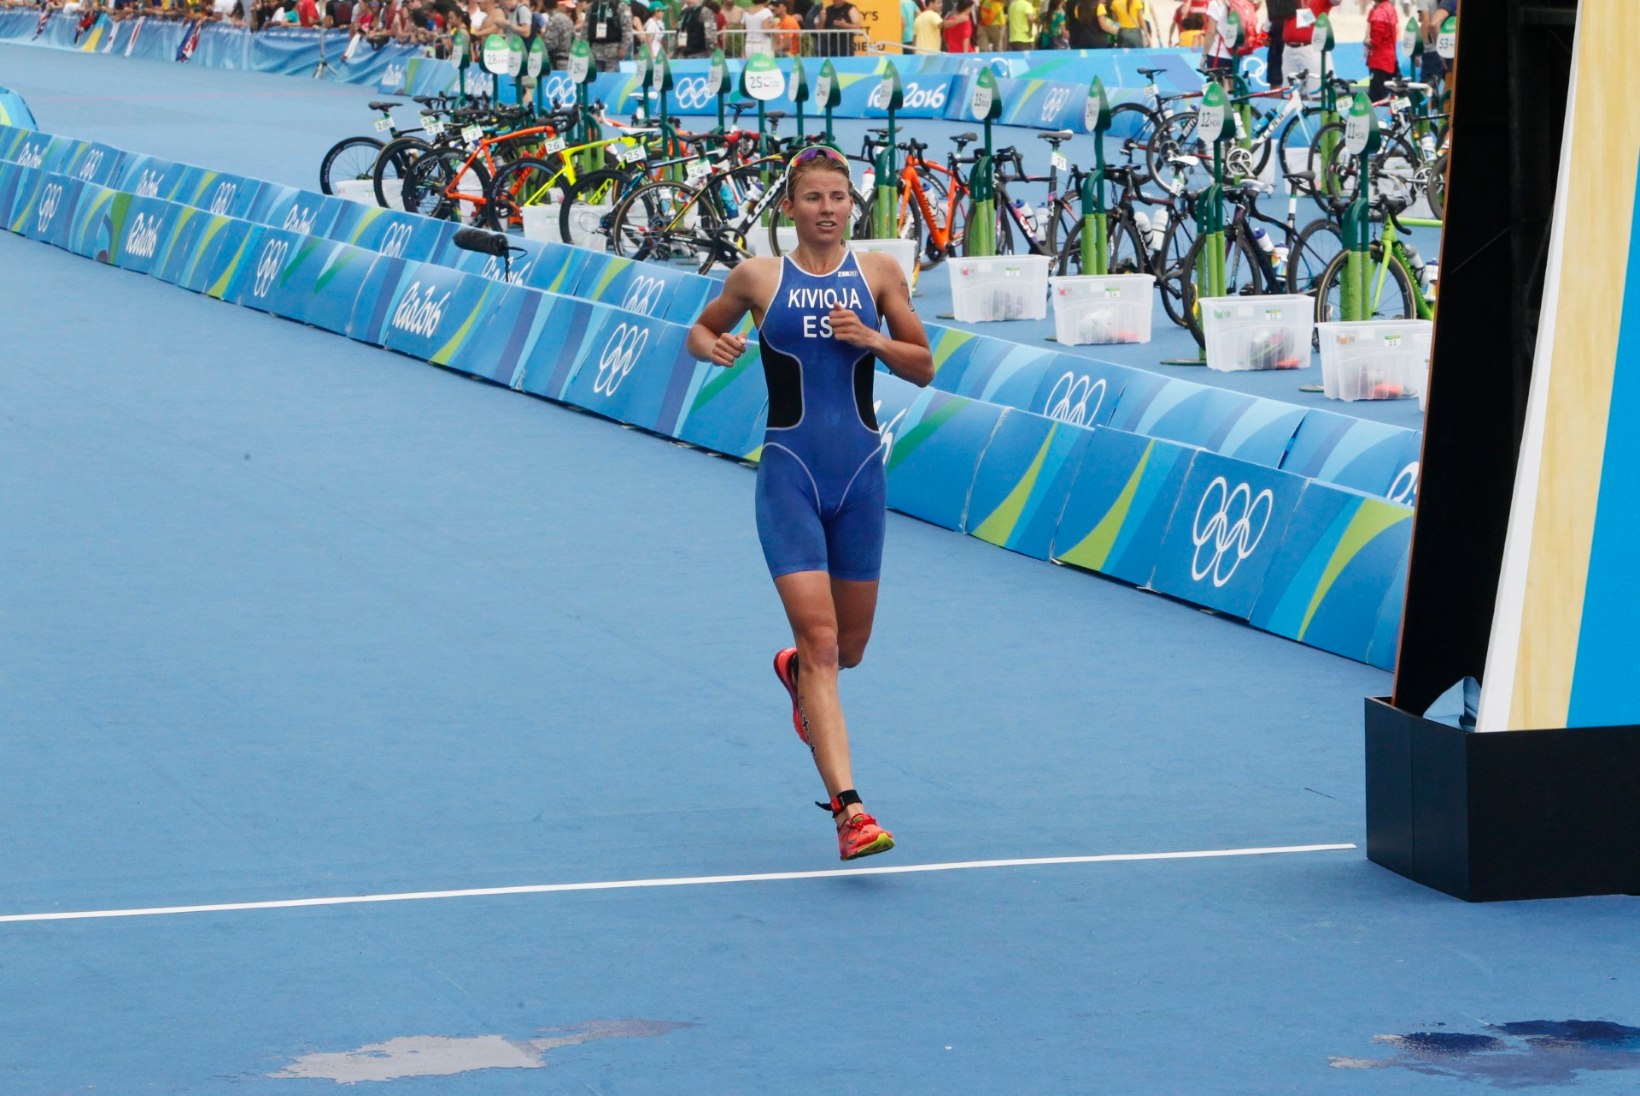 Kaidi Kivioja teenis olümpiadebüüdil 44. koha